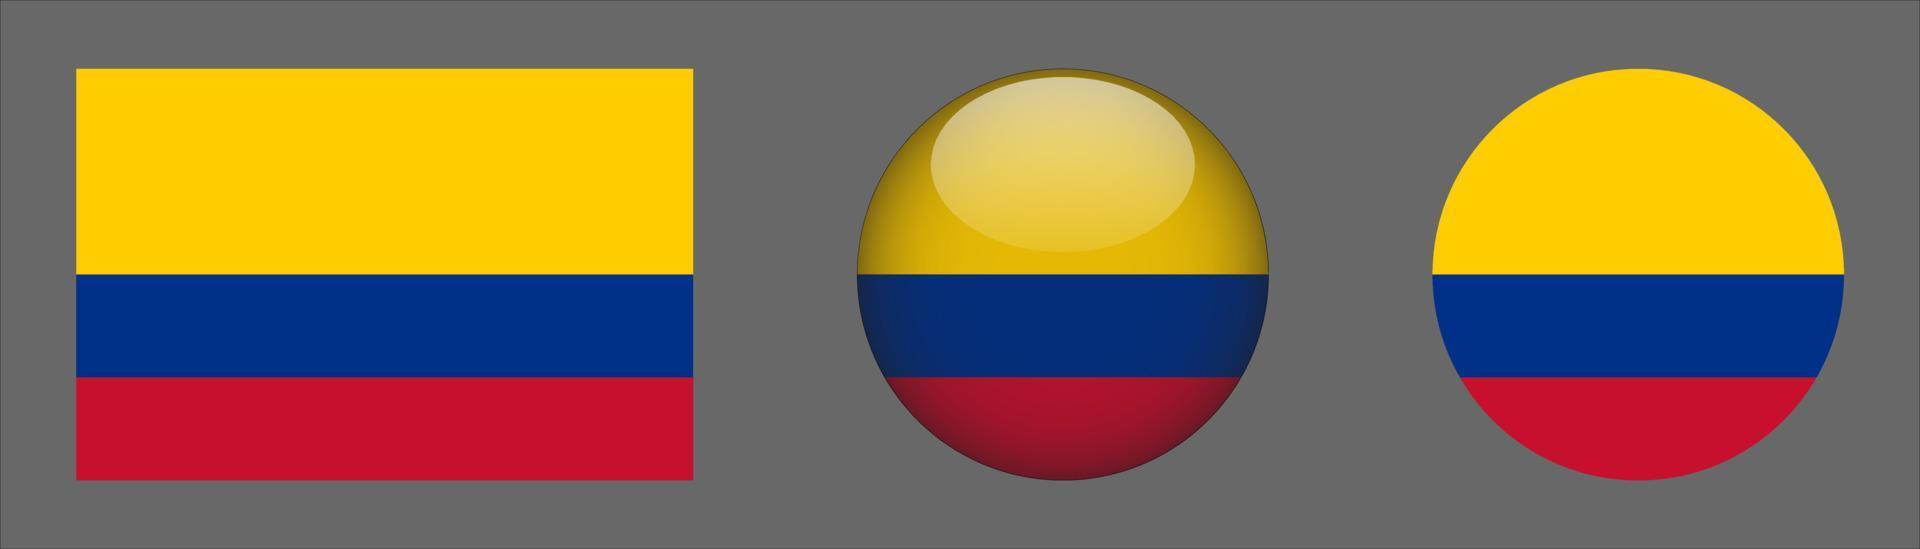 coleção de conjunto de bandeiras da Colômbia, proporção de tamanho original, 3D arredondado e plano arredondado vetor